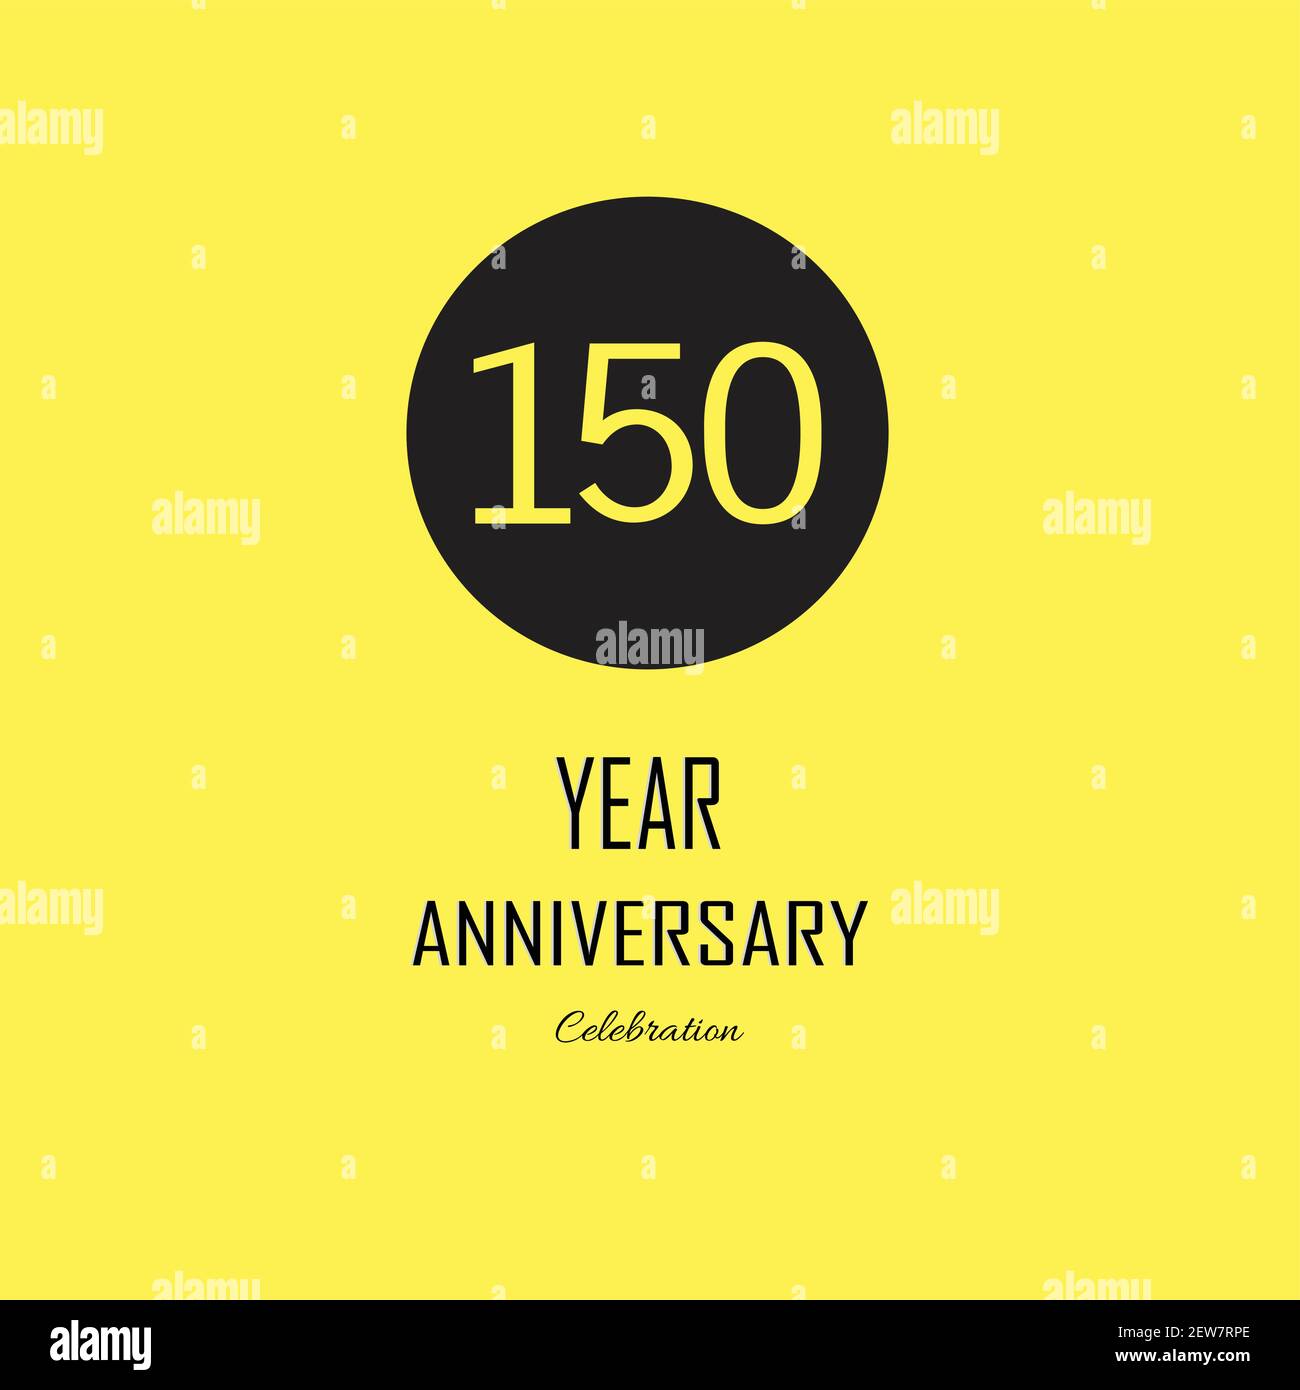 150 Year Anniversary